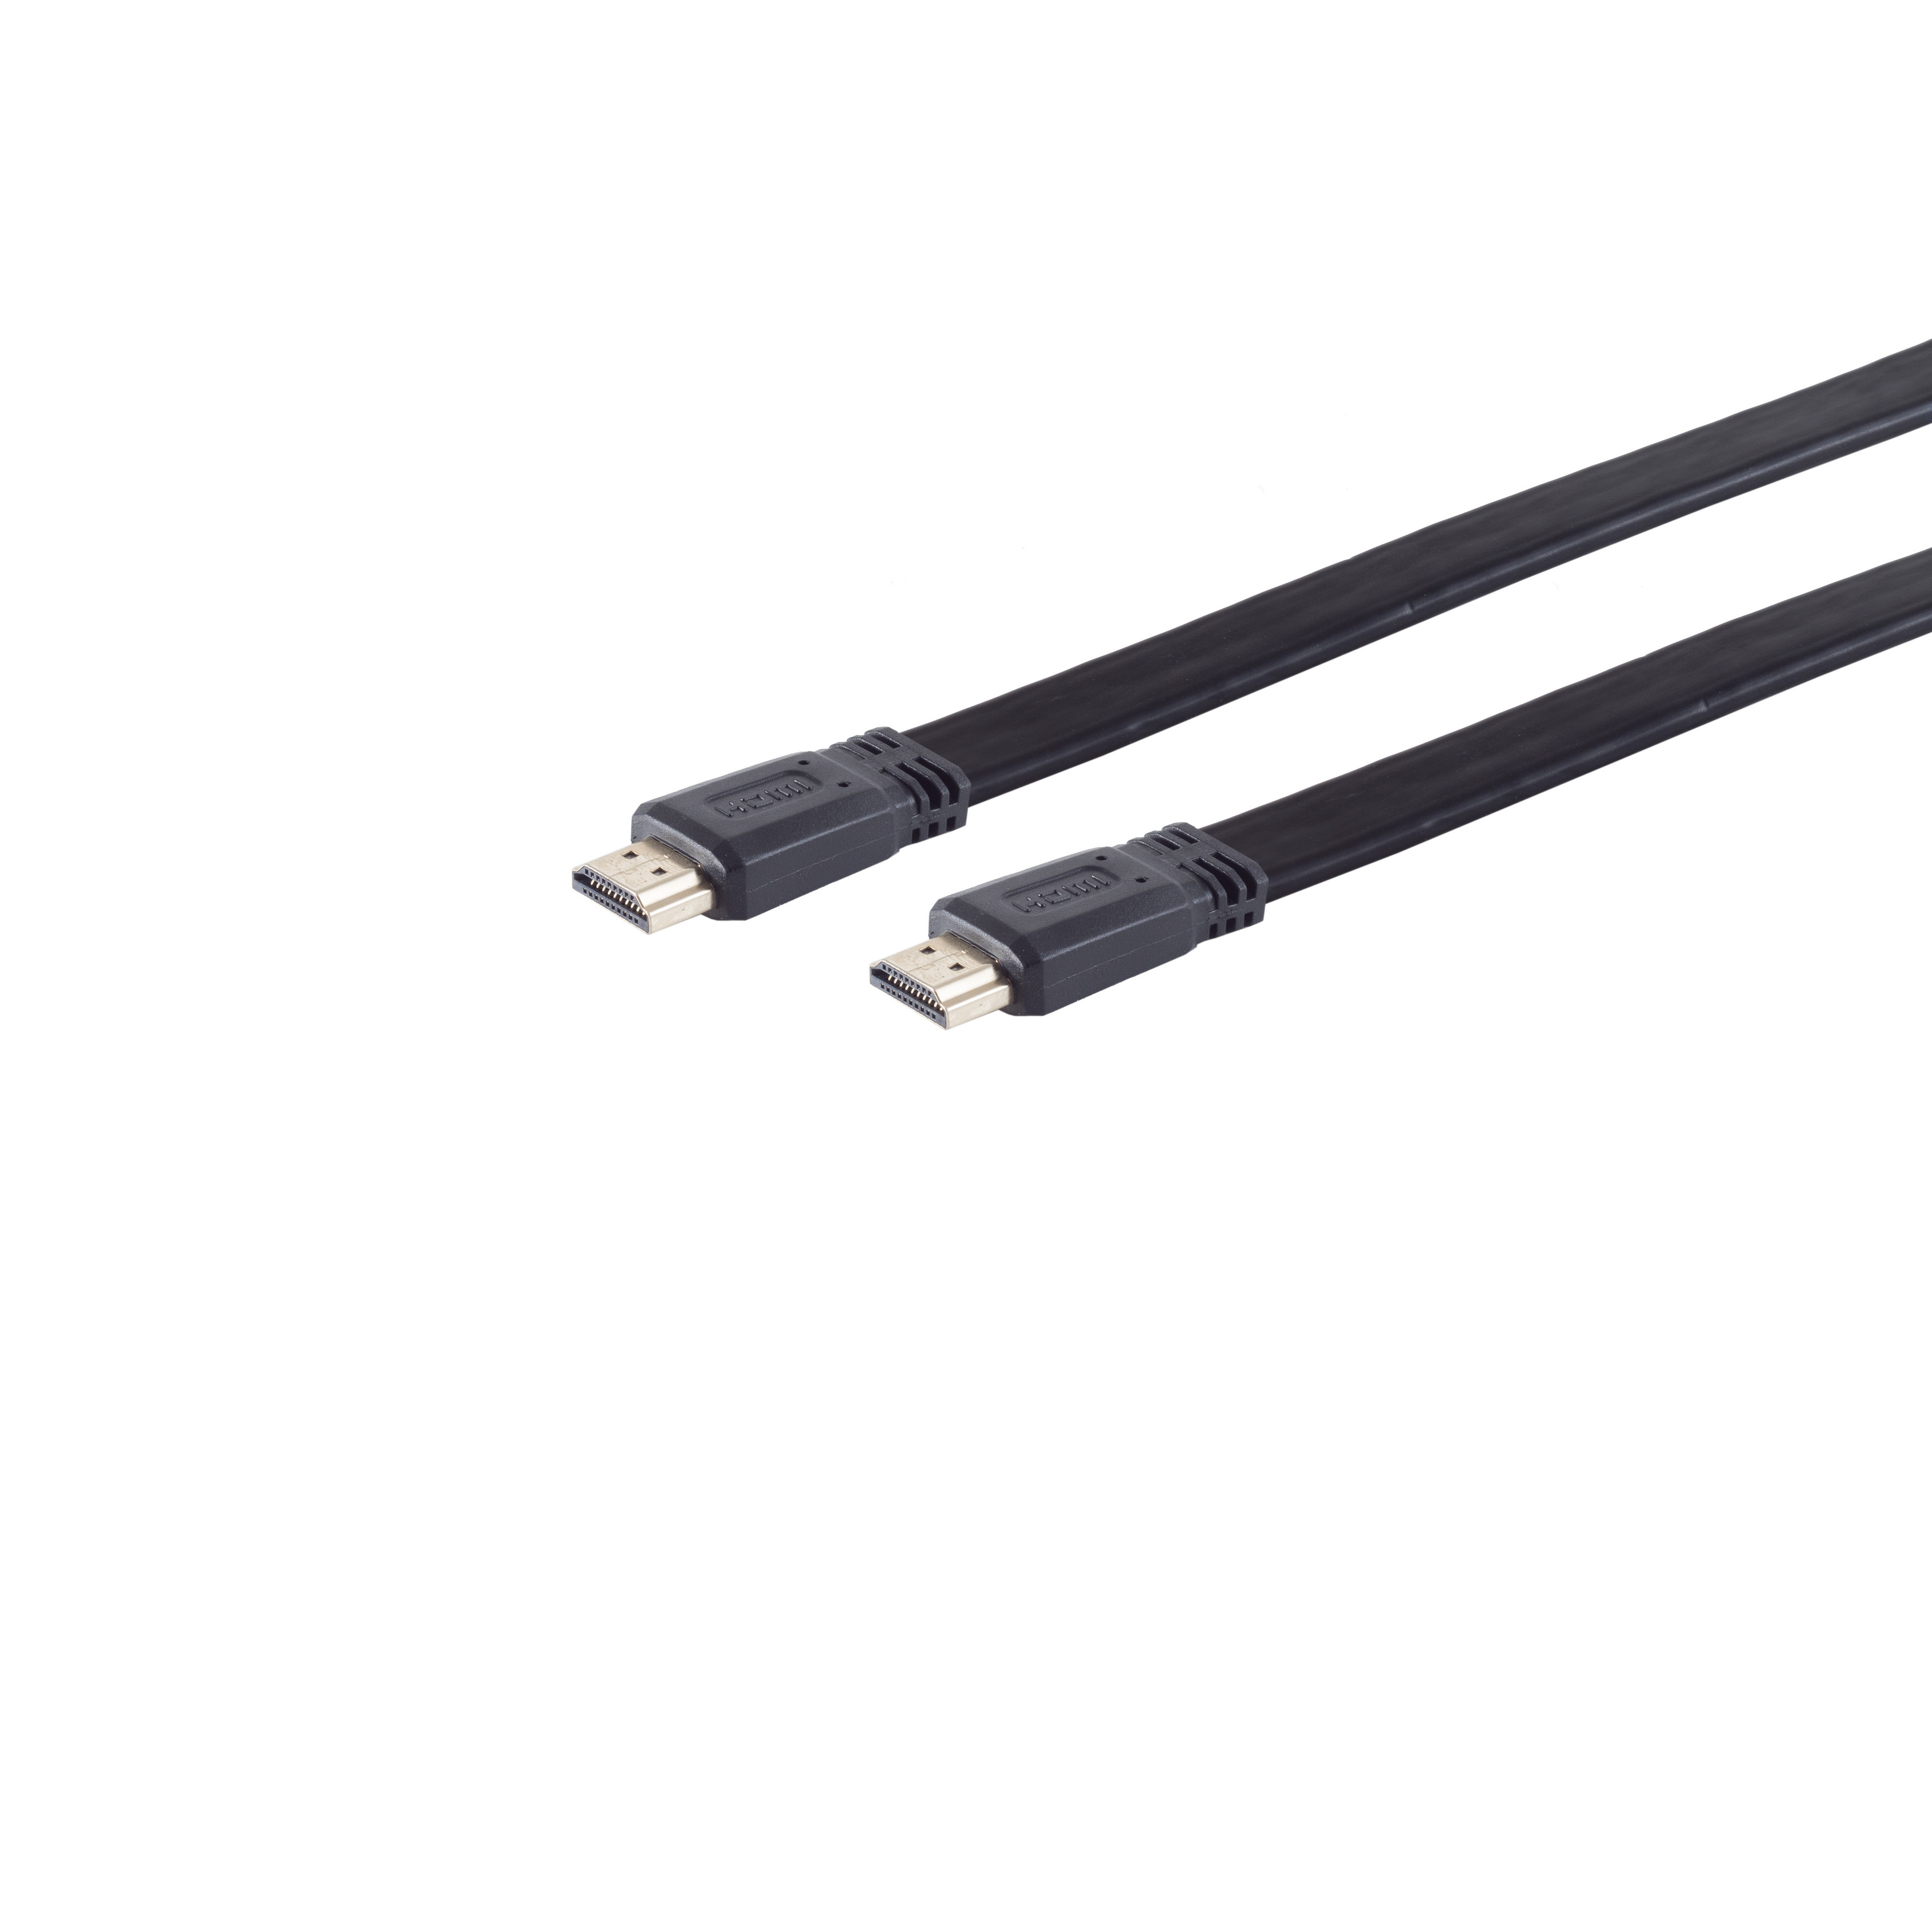 5m A-St HDMI KABELBUDE HDMI A-St. HEAC verg. / HDMI FLACH Kabel